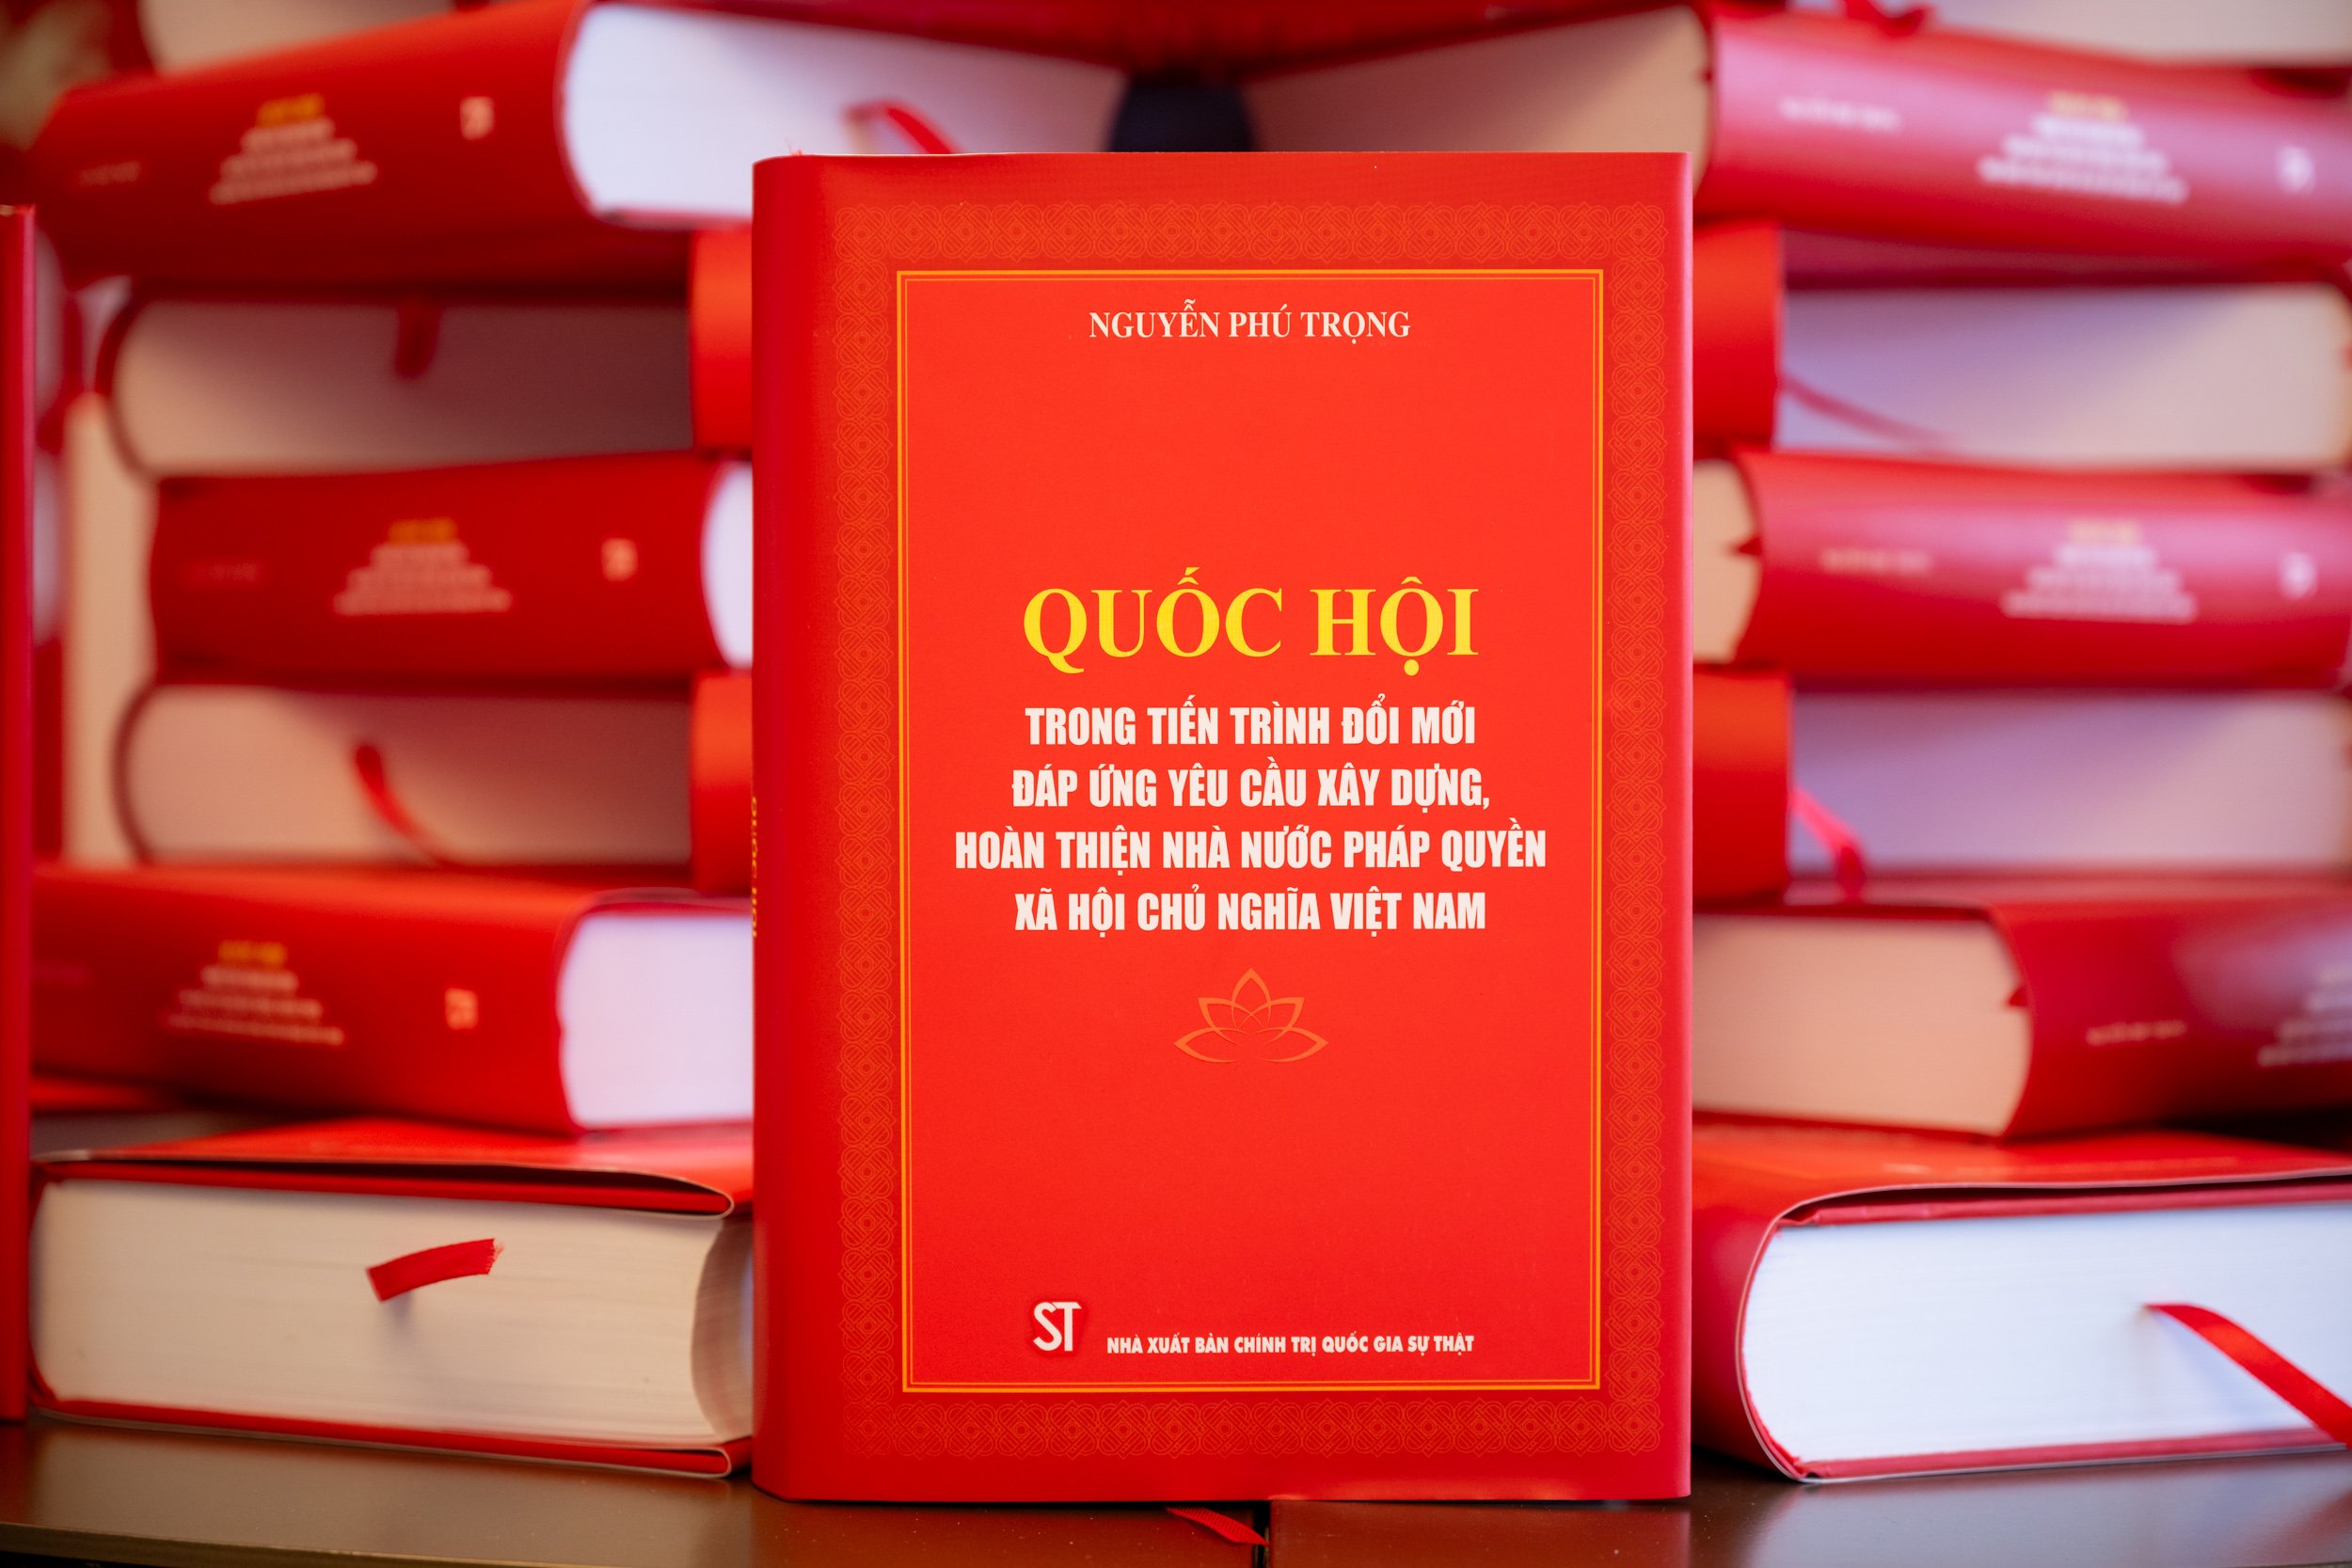 Ra mắt cuốn sách của Tổng Bí thư Nguyễn Phú Trọng về Quốc hội- Ảnh 2.